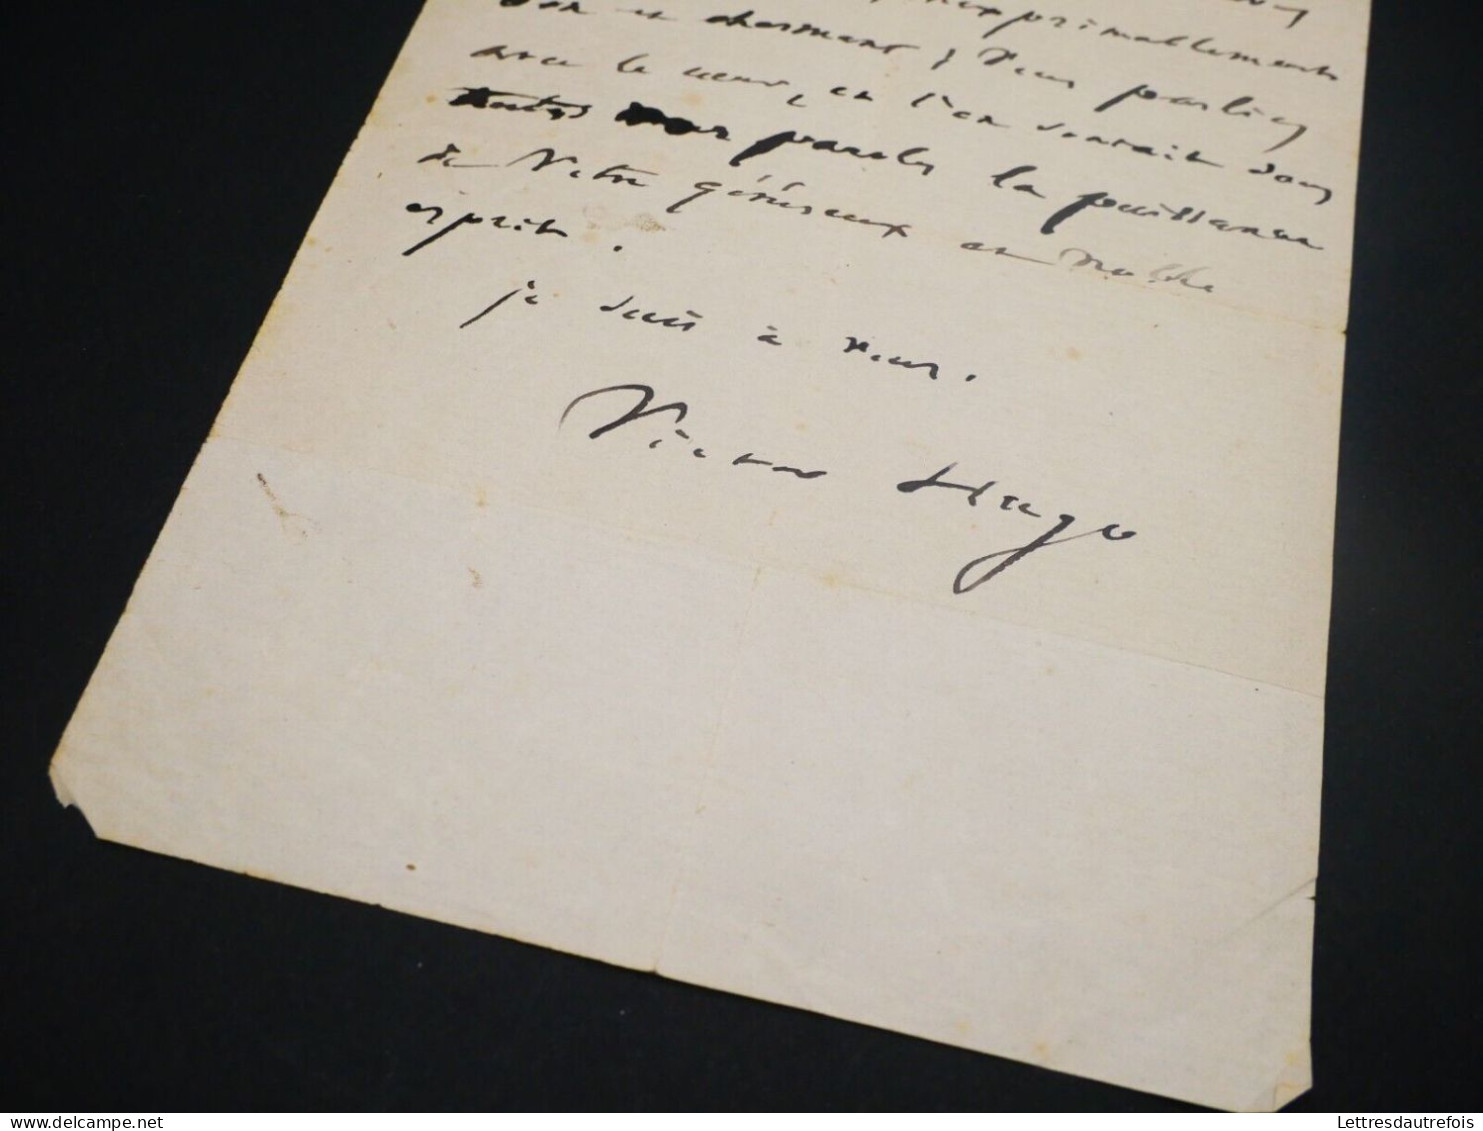 Victor Hugo - Lettre autographe signée - Manuscrit - "Généreux et noble esprit"